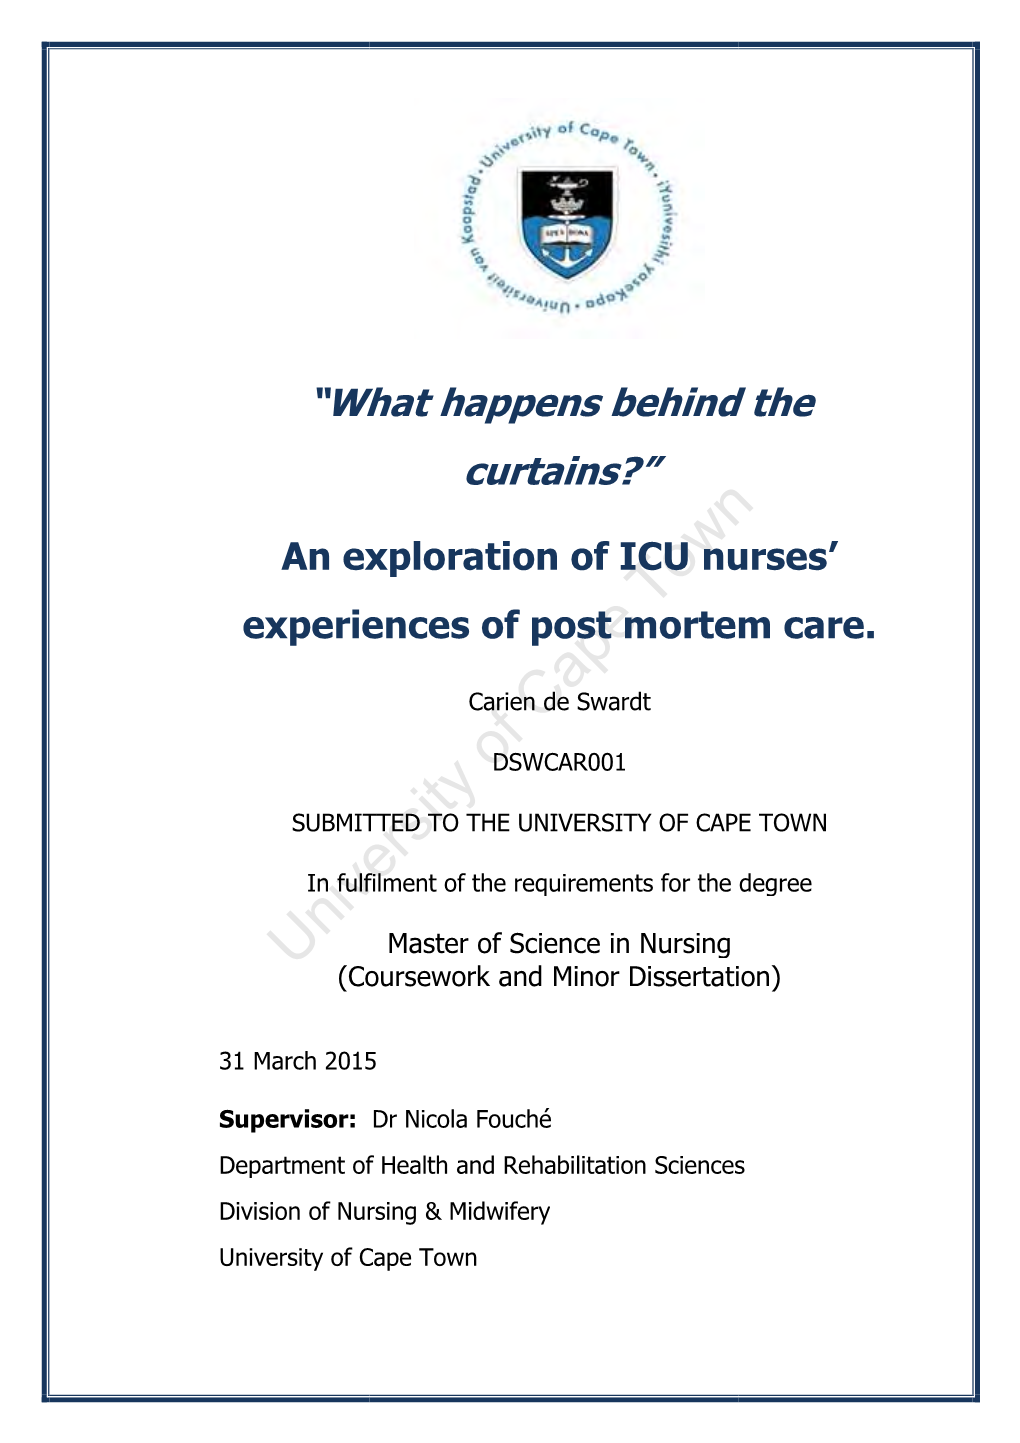 An Exploration of ICU Nurses Experiences of Post Mortem Care